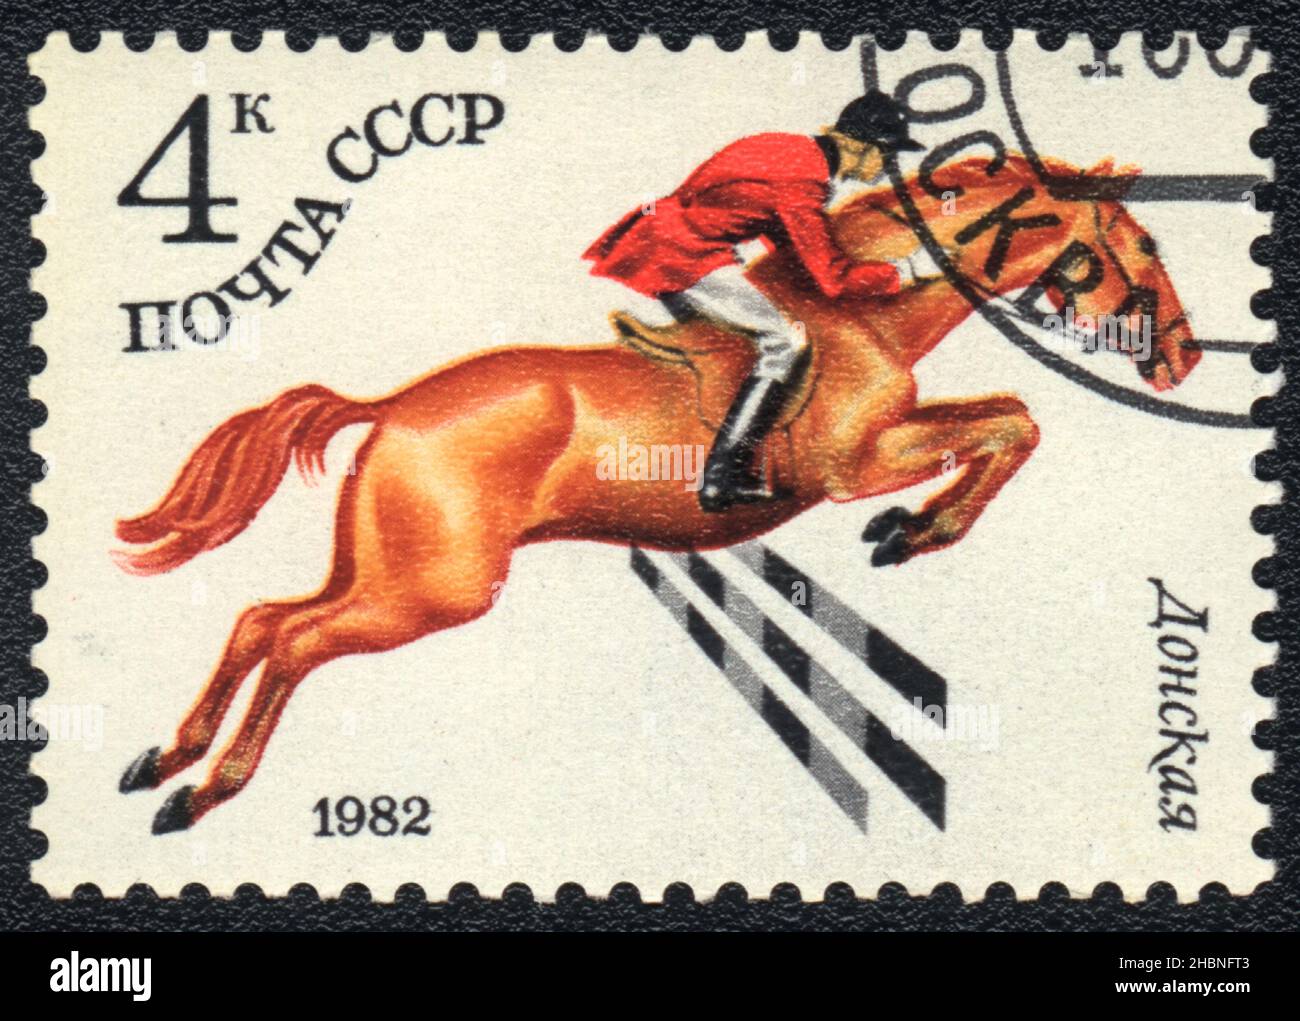 Un sello impreso en la URSS muestra una carrera de caballos Donskaya, serie de razas de caballos en un deporte ecuestre, URSS 1982 Foto de stock